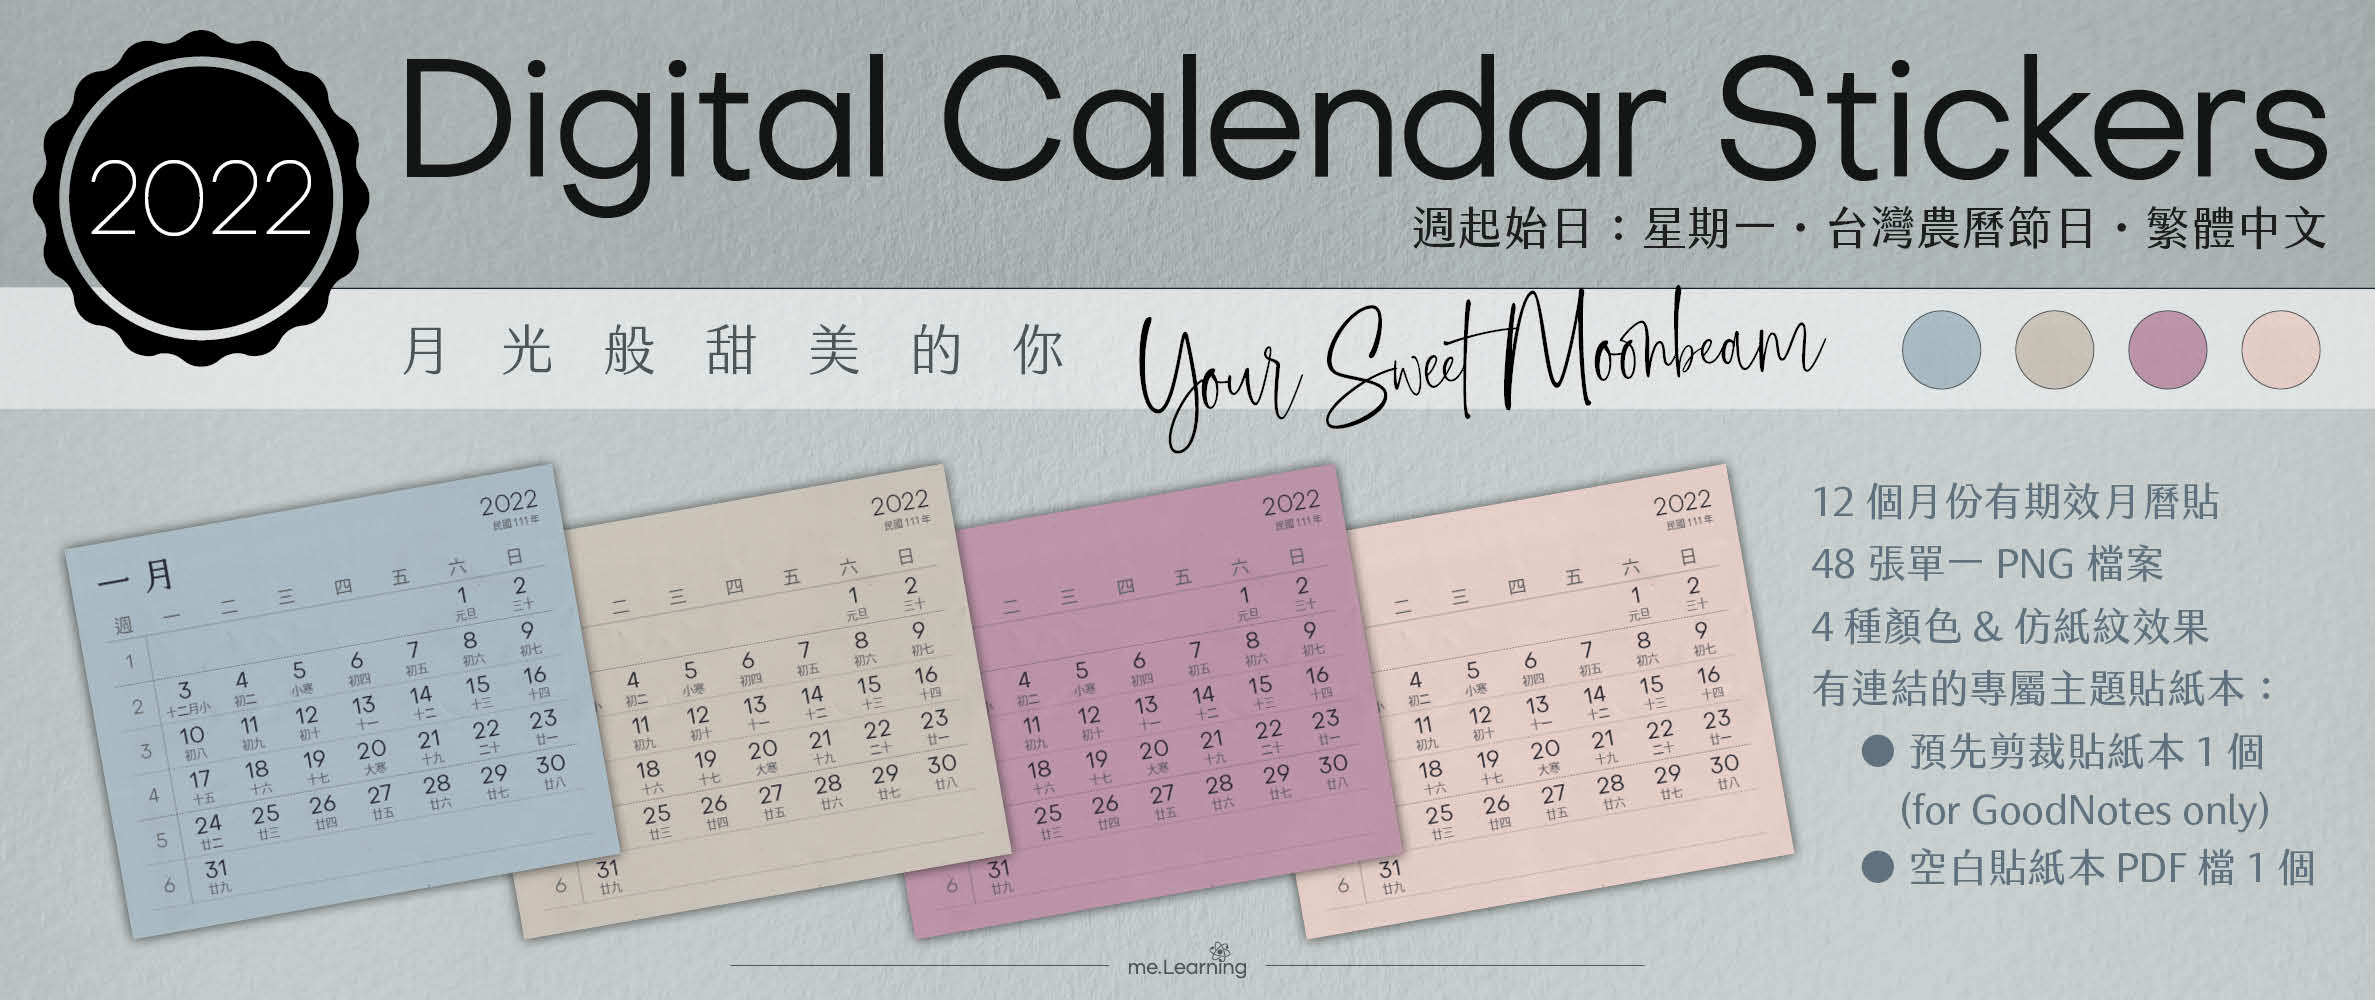 月曆貼-台灣繁中-2022年-月光般甜美的你-電子貼紙包Style001-農曆-Monday start-CD0003